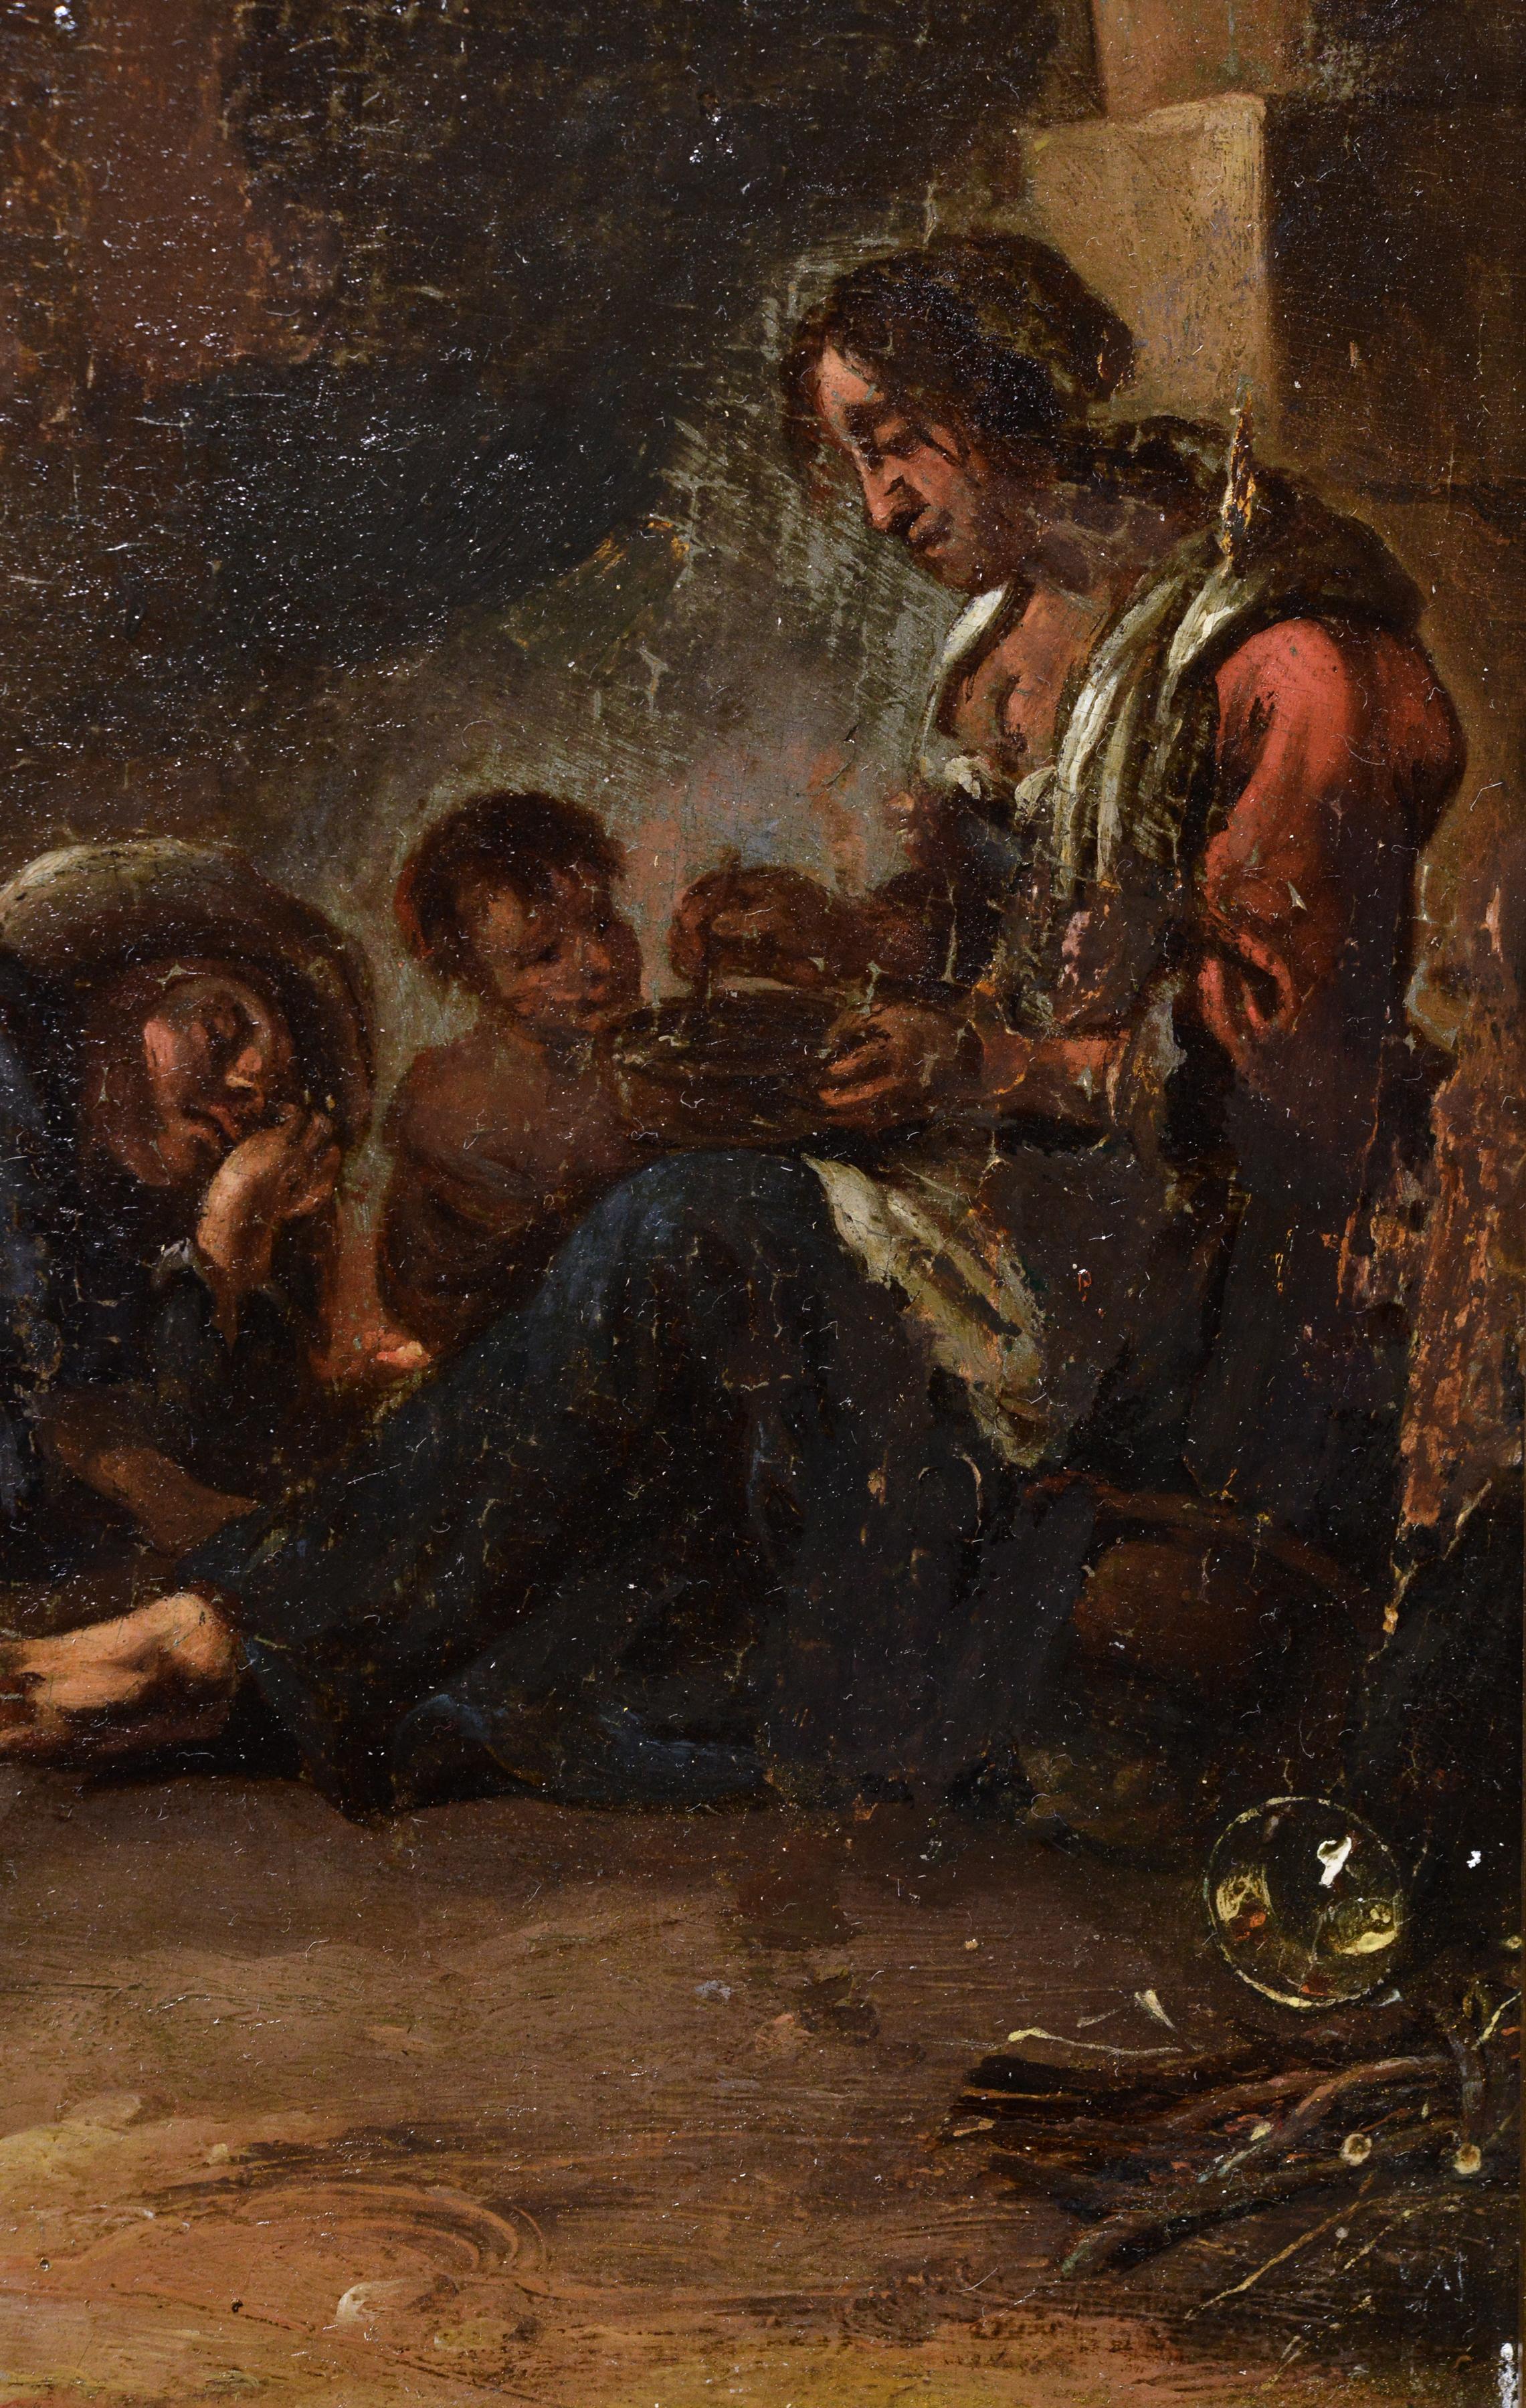 Très bien exécutée, cette œuvre d'art du milieu du XVIIIe siècle, plutôt une étude à l'huile, représente une famille se reposant à l'abri du soleil brûlant de midi dans une arche en forme de grotte dans un quartier en ruine de Townes. La mère